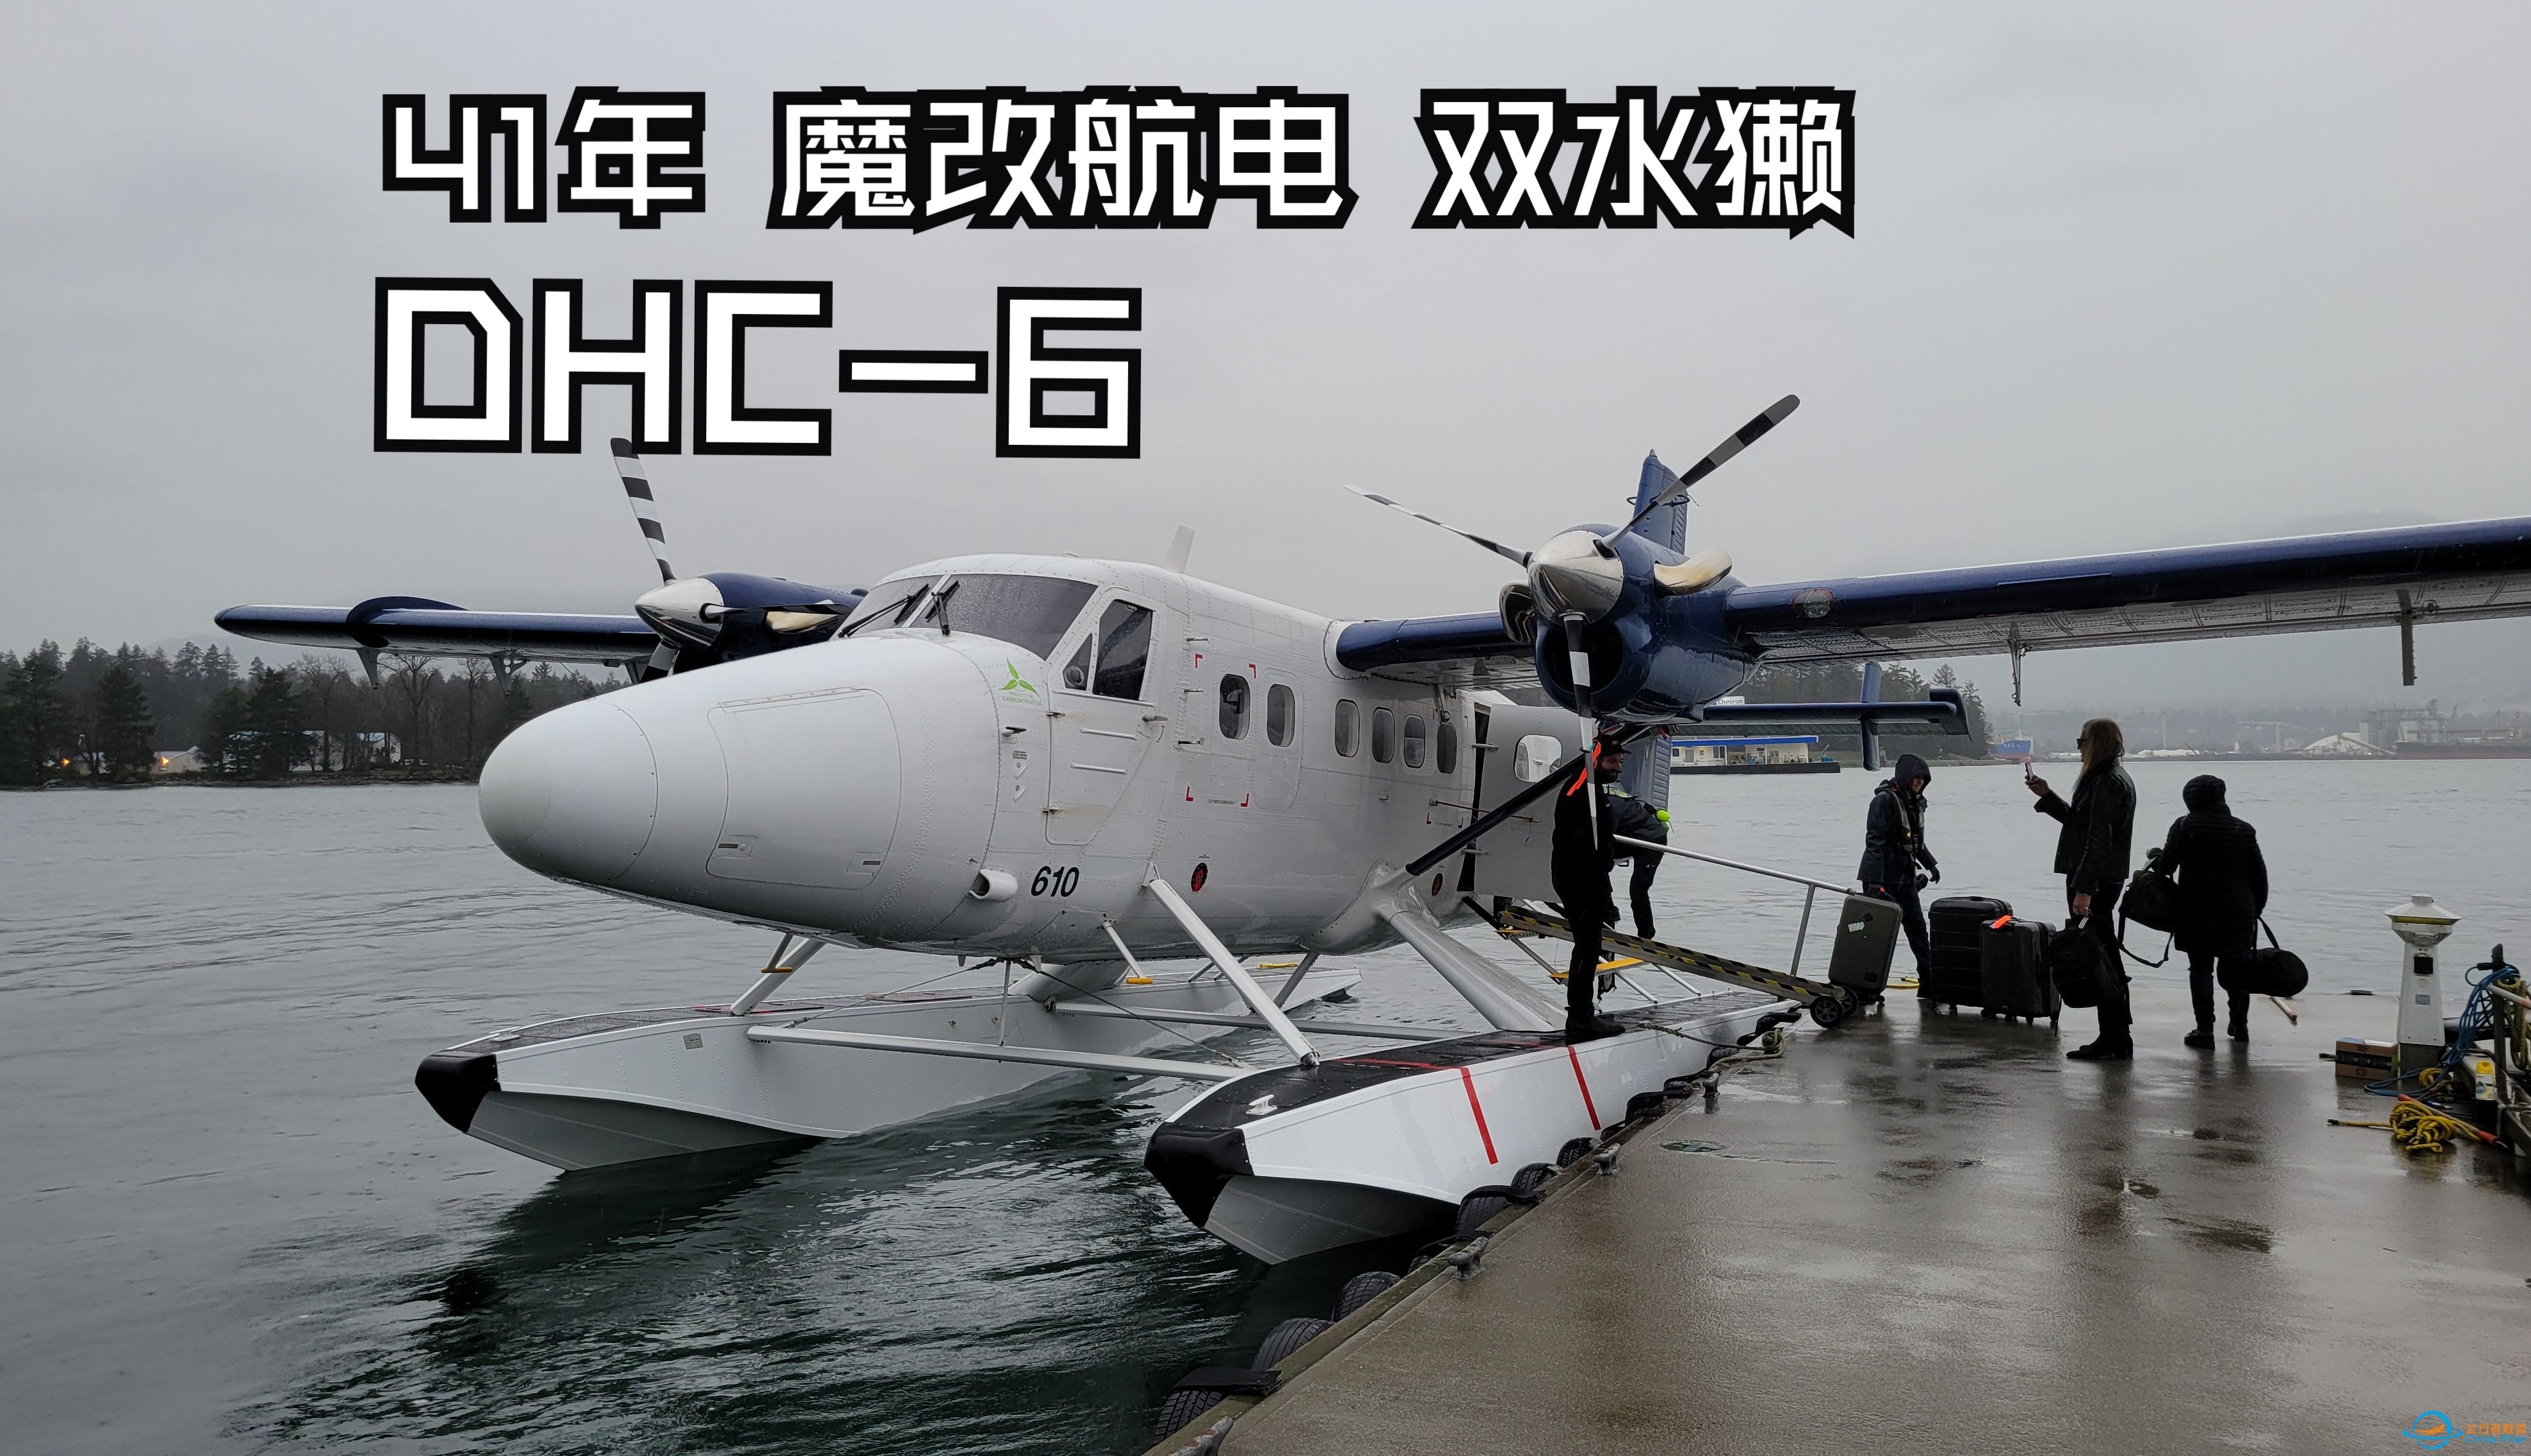 【飞行游记】41年的魔改老飞机？海港航空DHC-6双水獭水上飞机飞行体验-5621 